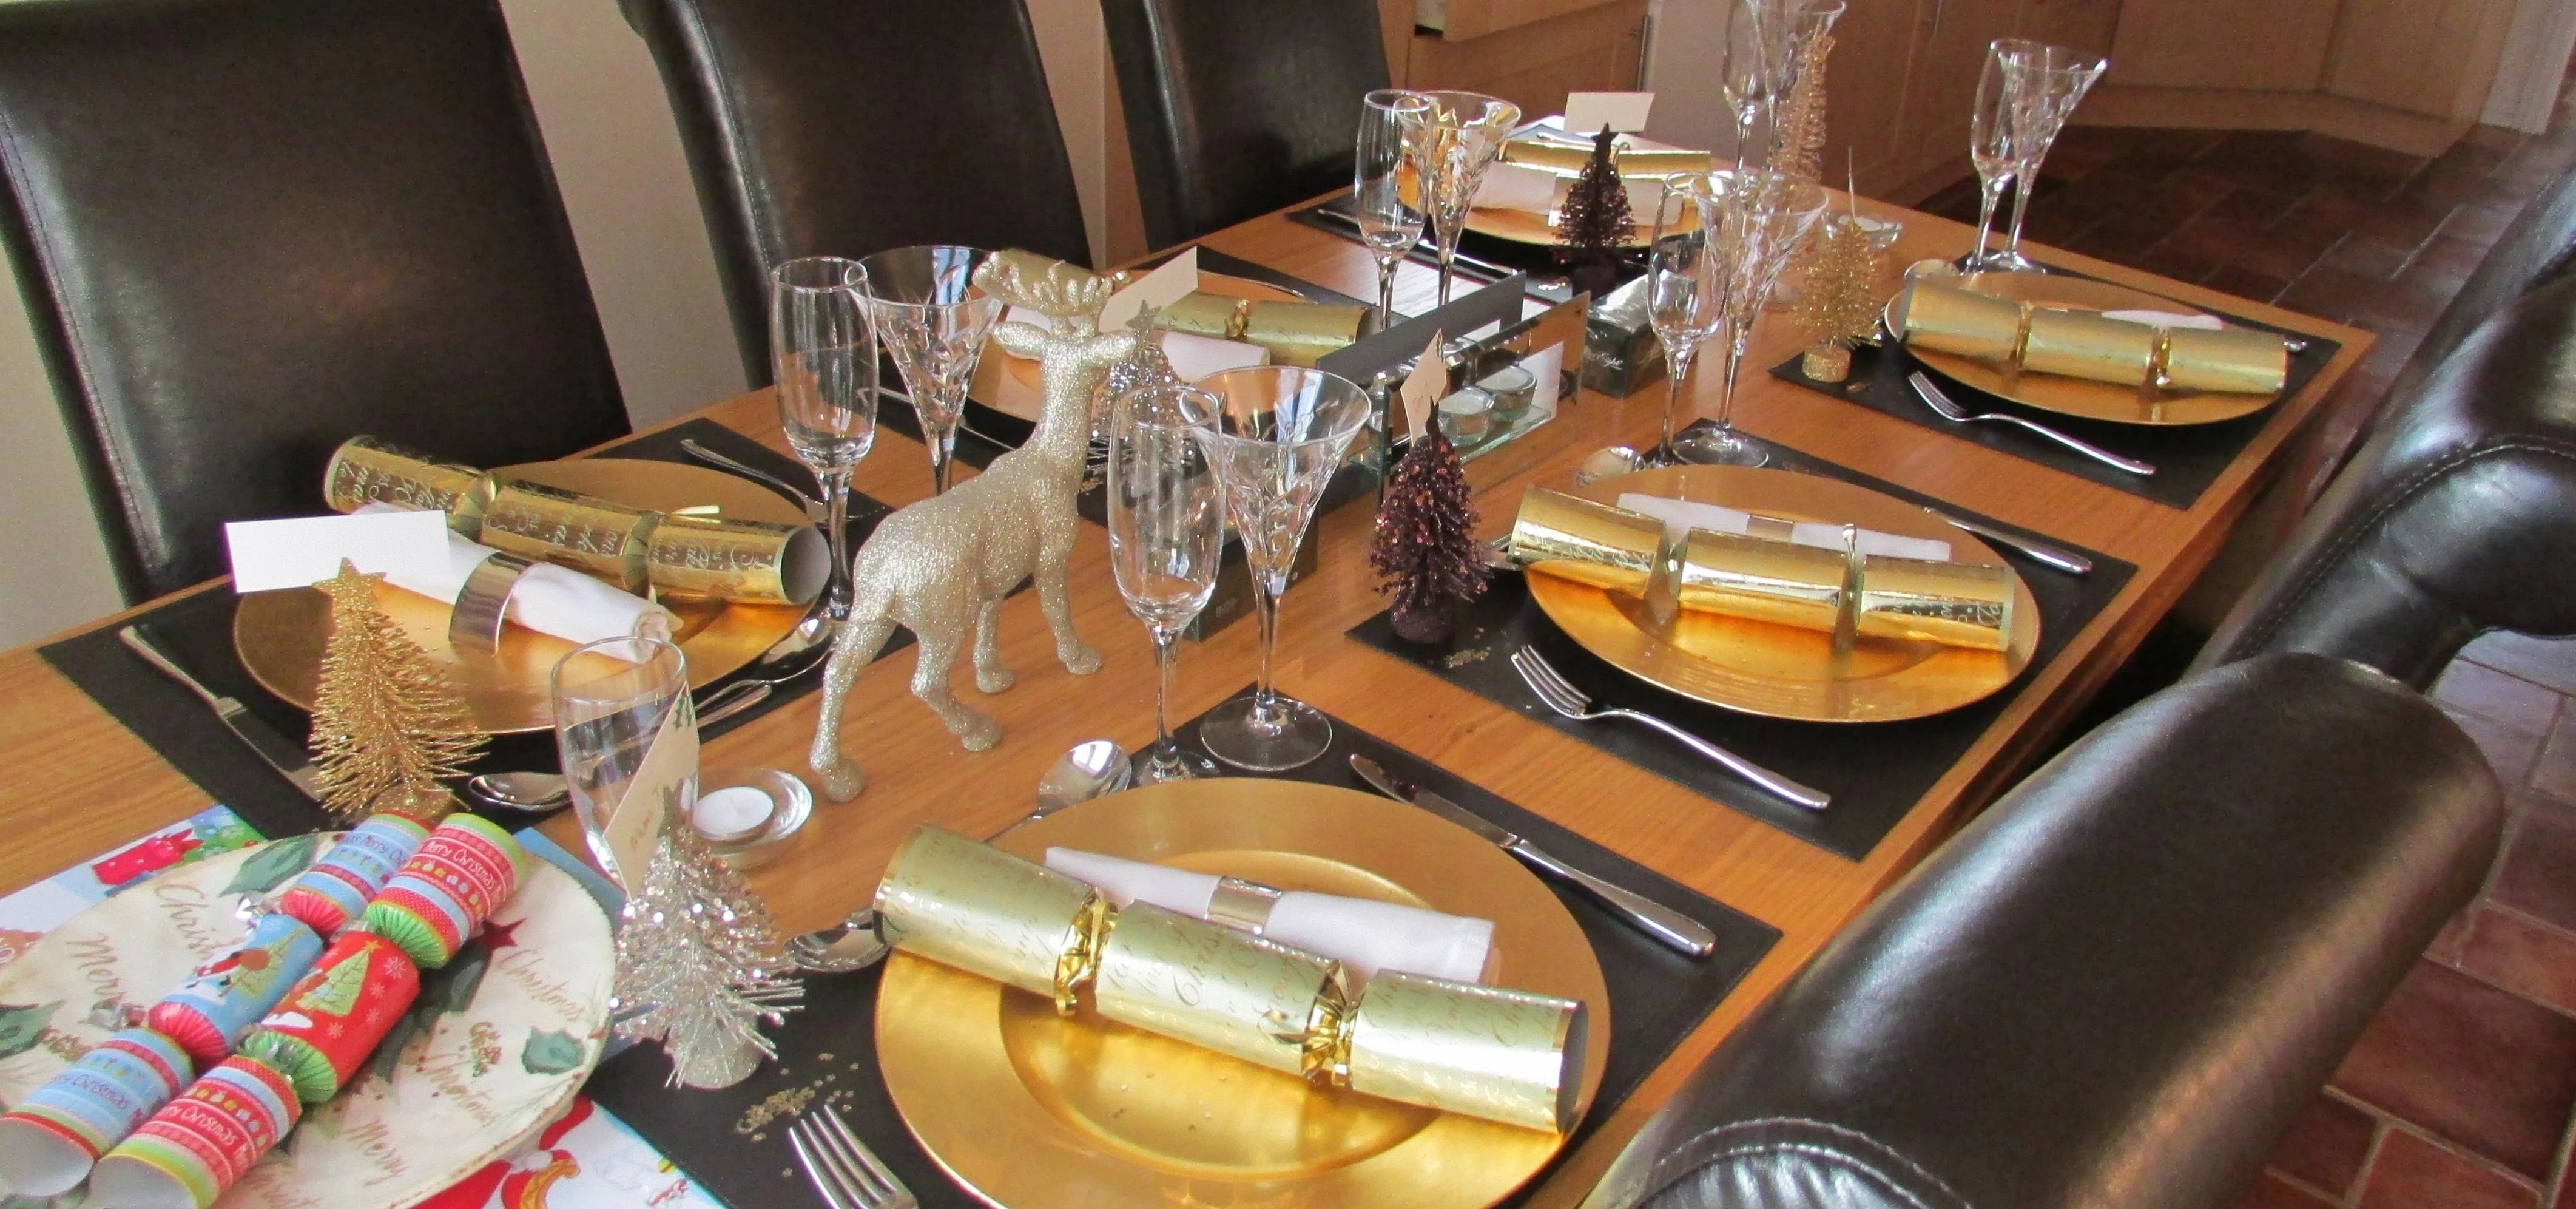 Table set for Christmas dinner